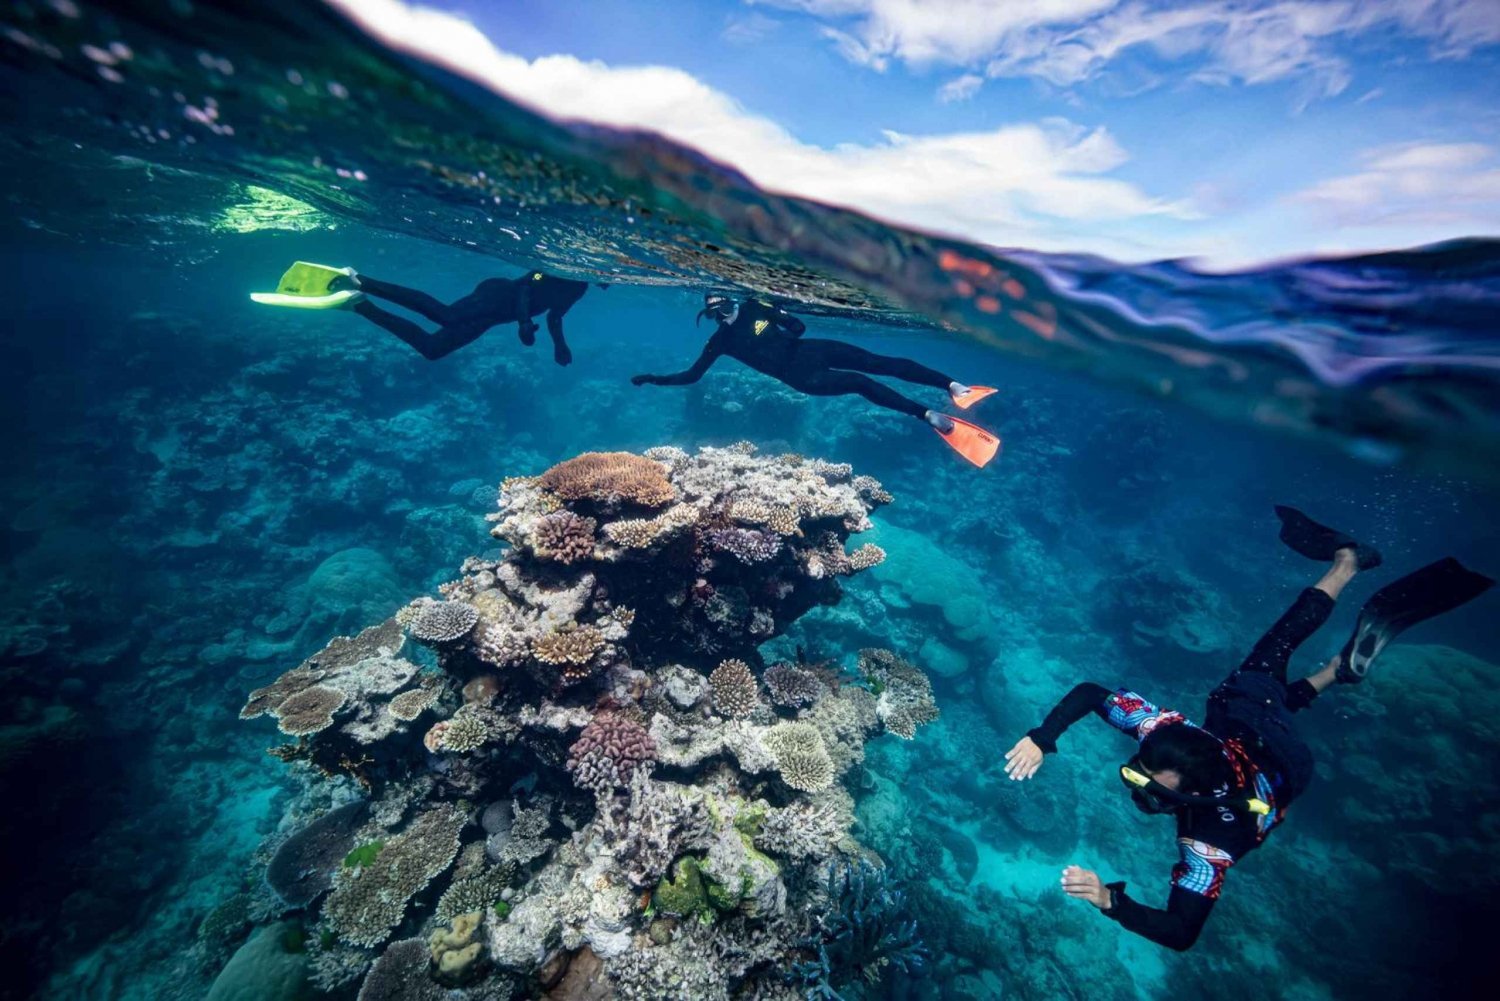 Von Cairns aus: Schnorchelausflug zum Great Barrier Reef mit Mittagessen